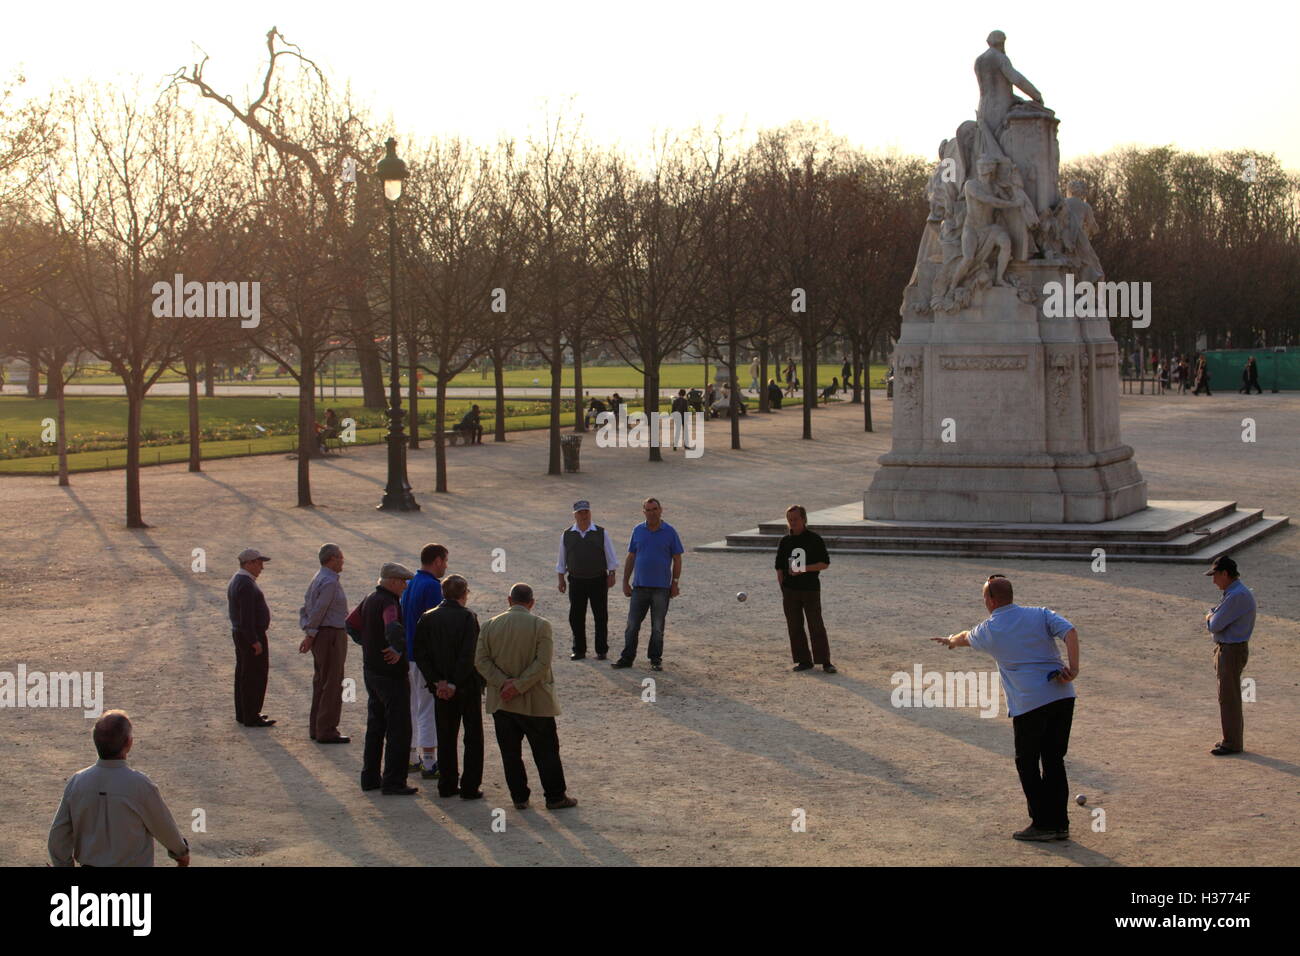 Les joueurs de pétanque dans le Jardin de Toullerie Toullerie (jardin).paris.France Banque D'Images